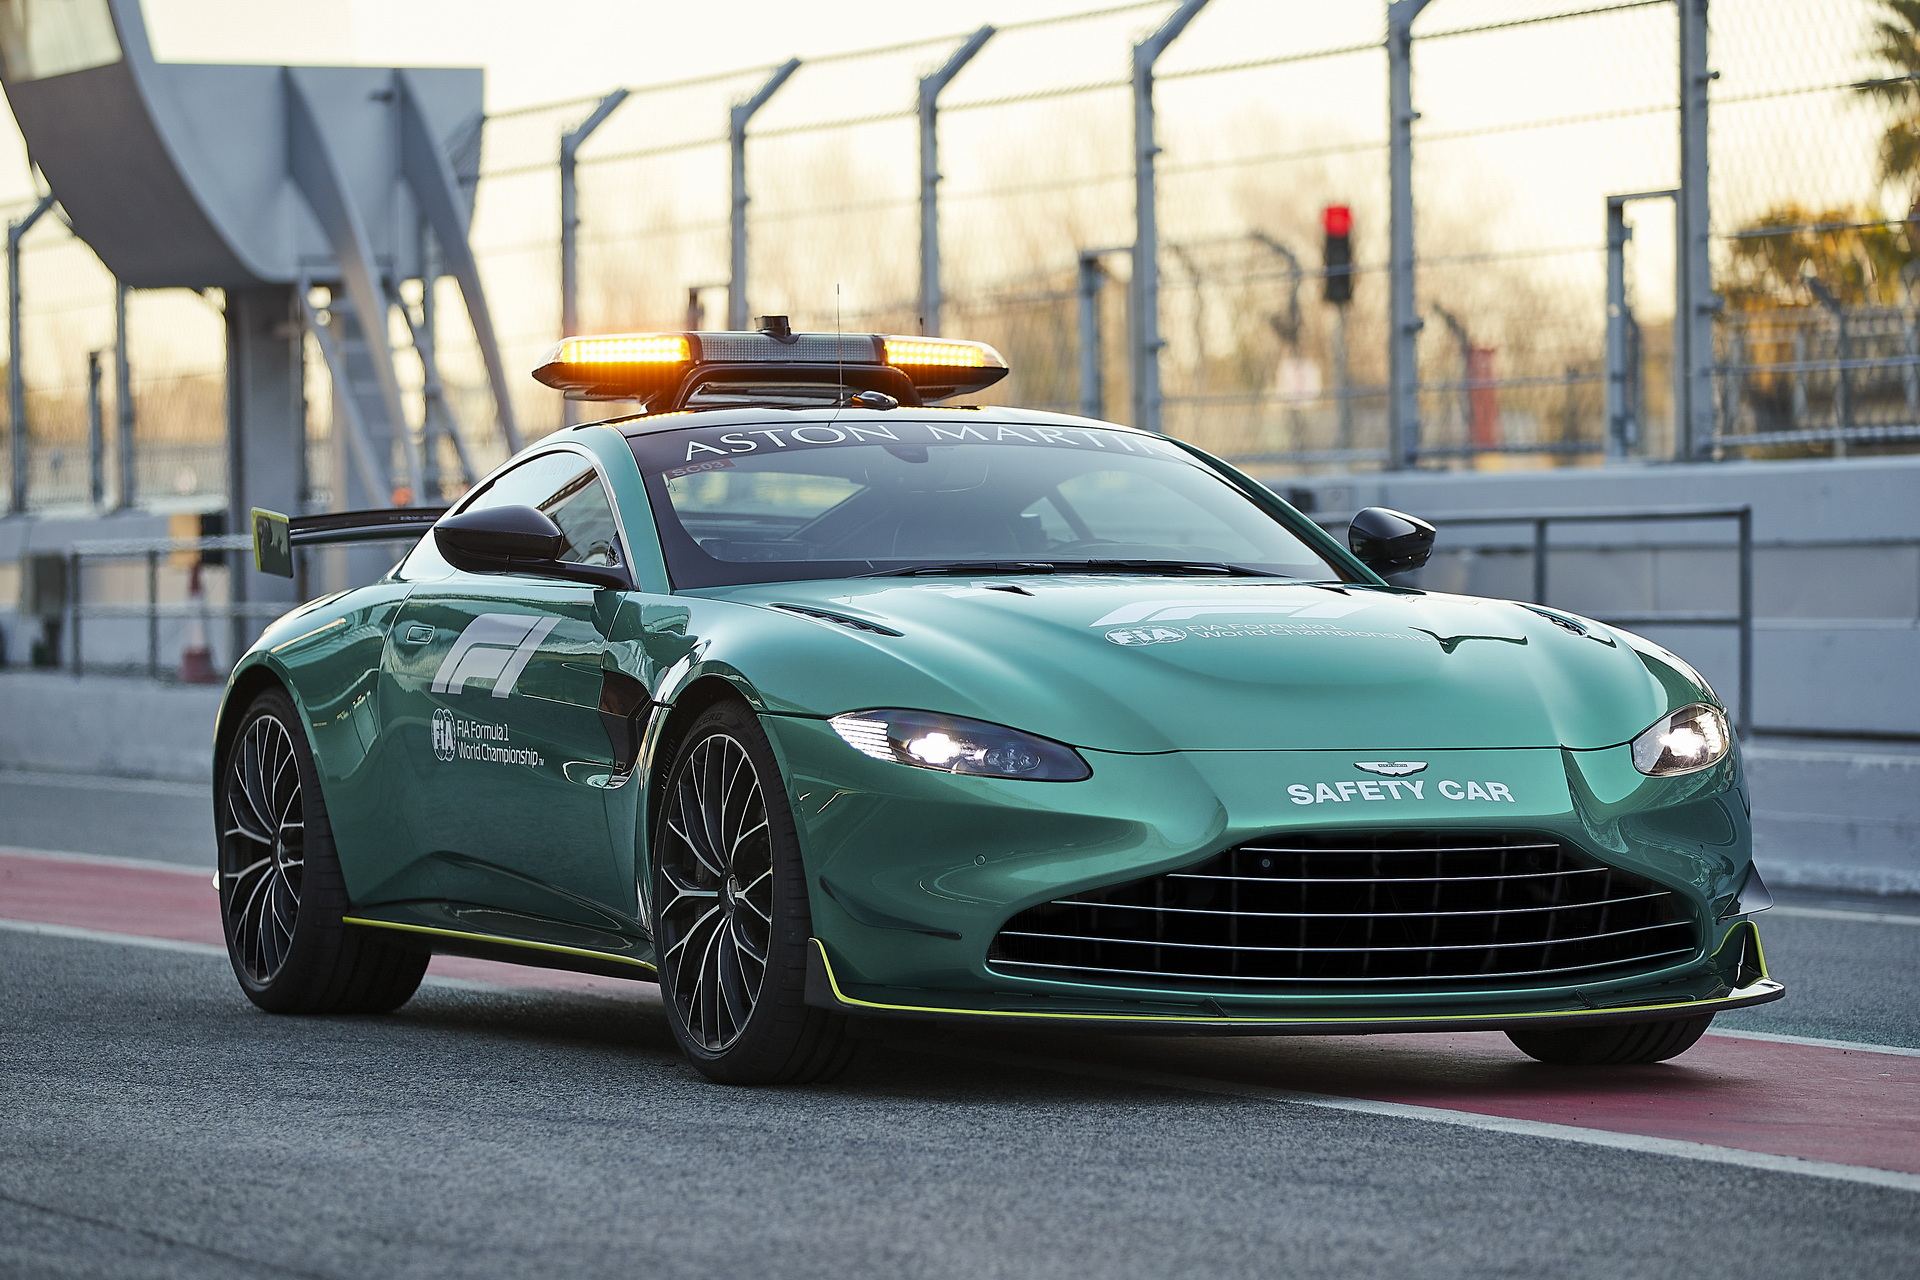 Aston Martin F1 Safety Car Medical Car (6)